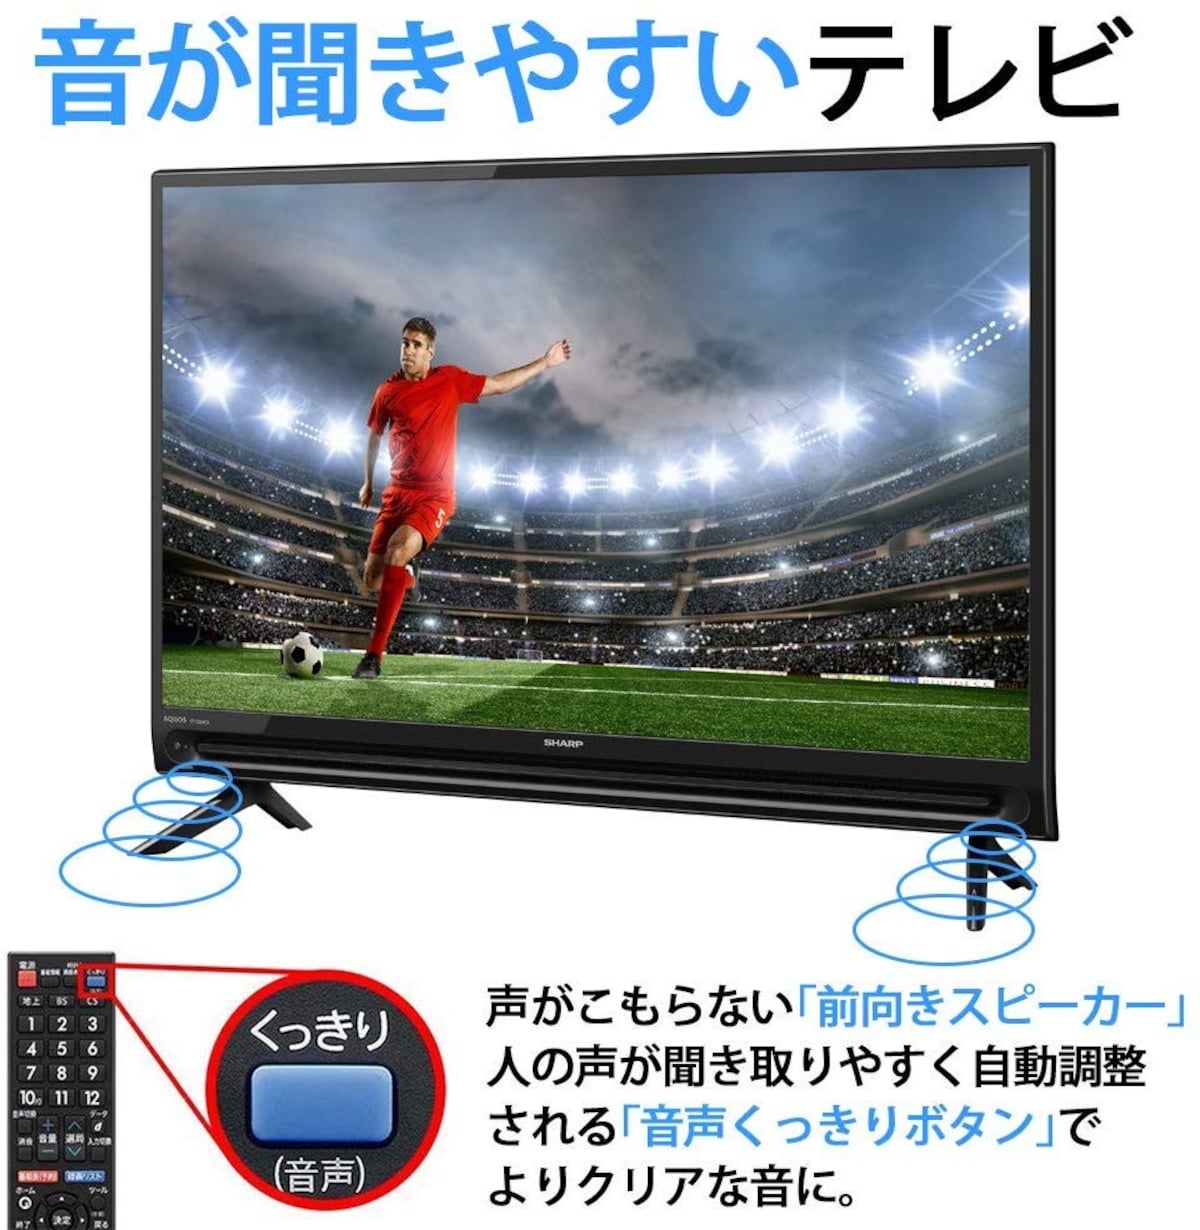 値下げ中‼︎AQUOS 2T-C32EF1 32インチ シャープ 液晶テレビ - テレビ